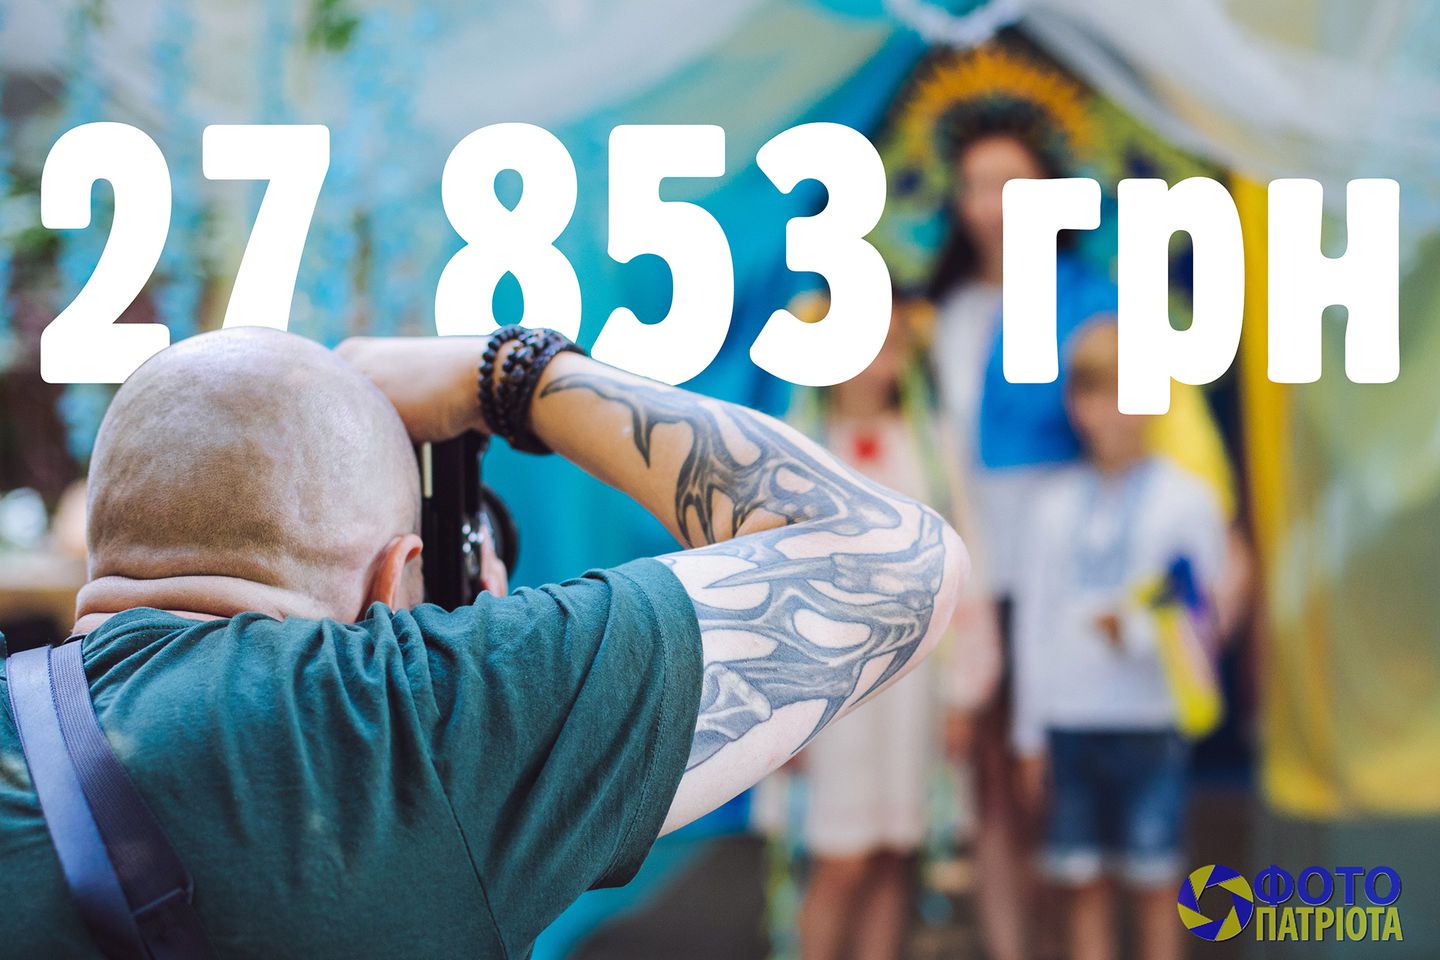 Понад 27 тис. грн зібрали за 2 дні в Ужгороді під час волонтерської акції "Фото патріота" 